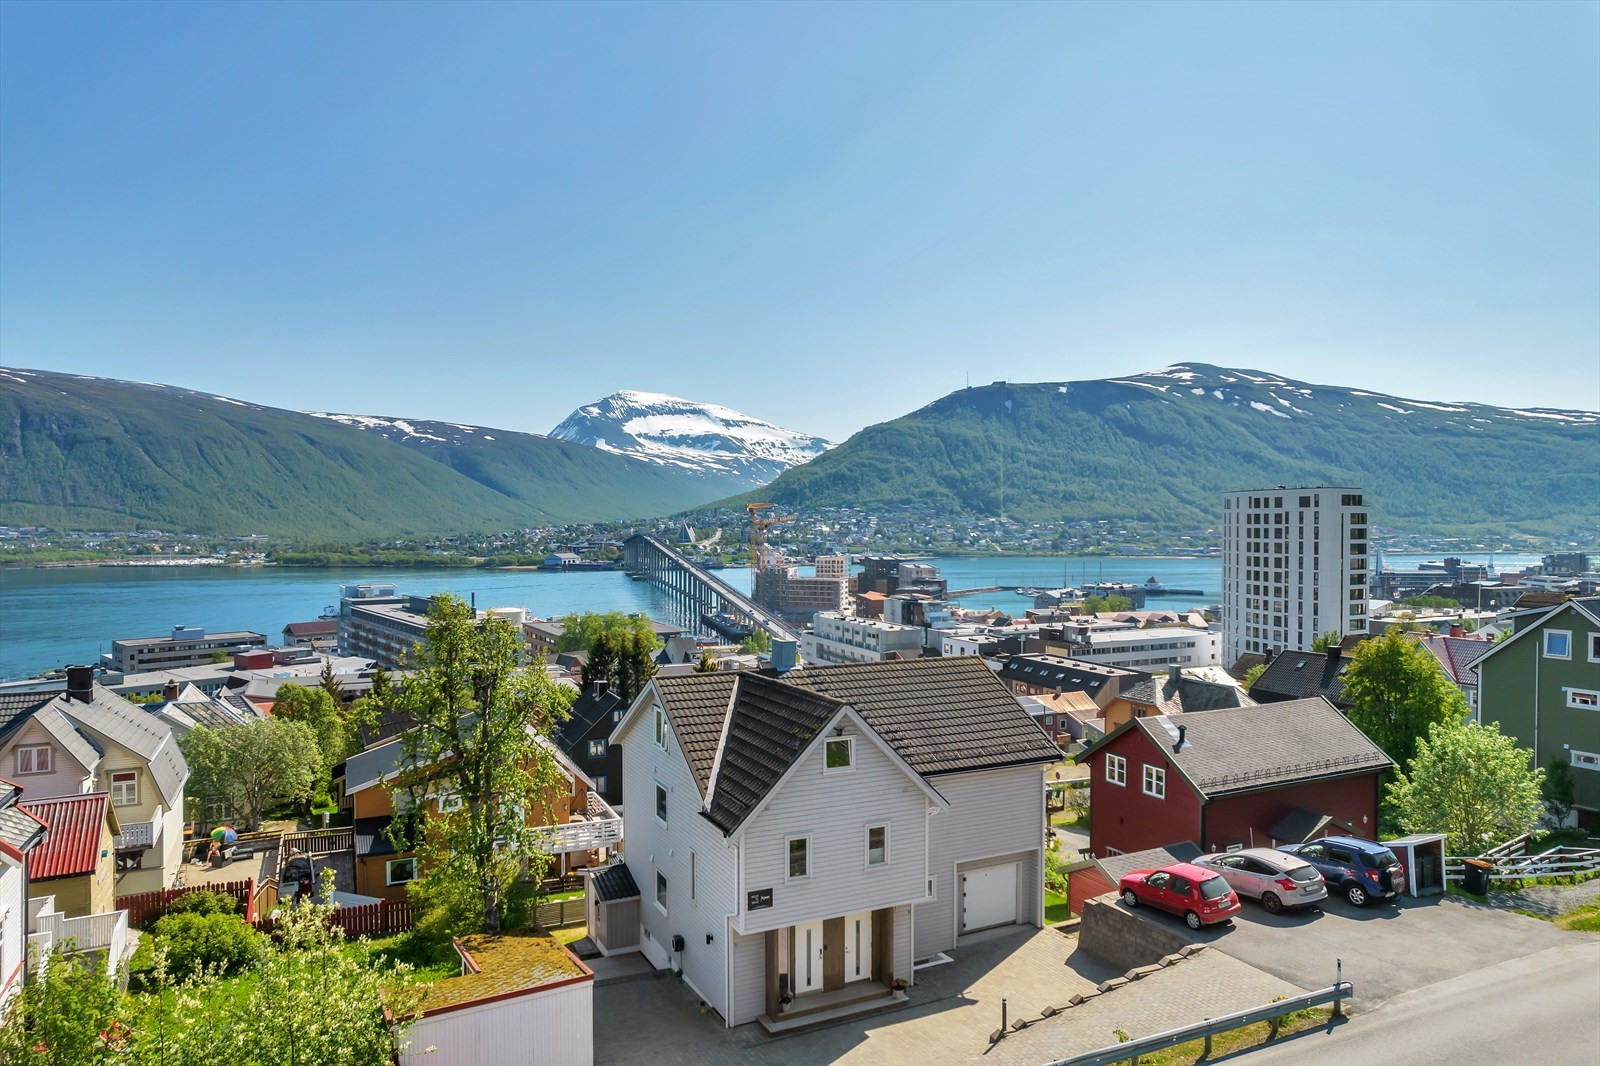 Velkommen til Dramsvegen 39, en stor enebolig med utleie i øvre del av Tromsø sentrum